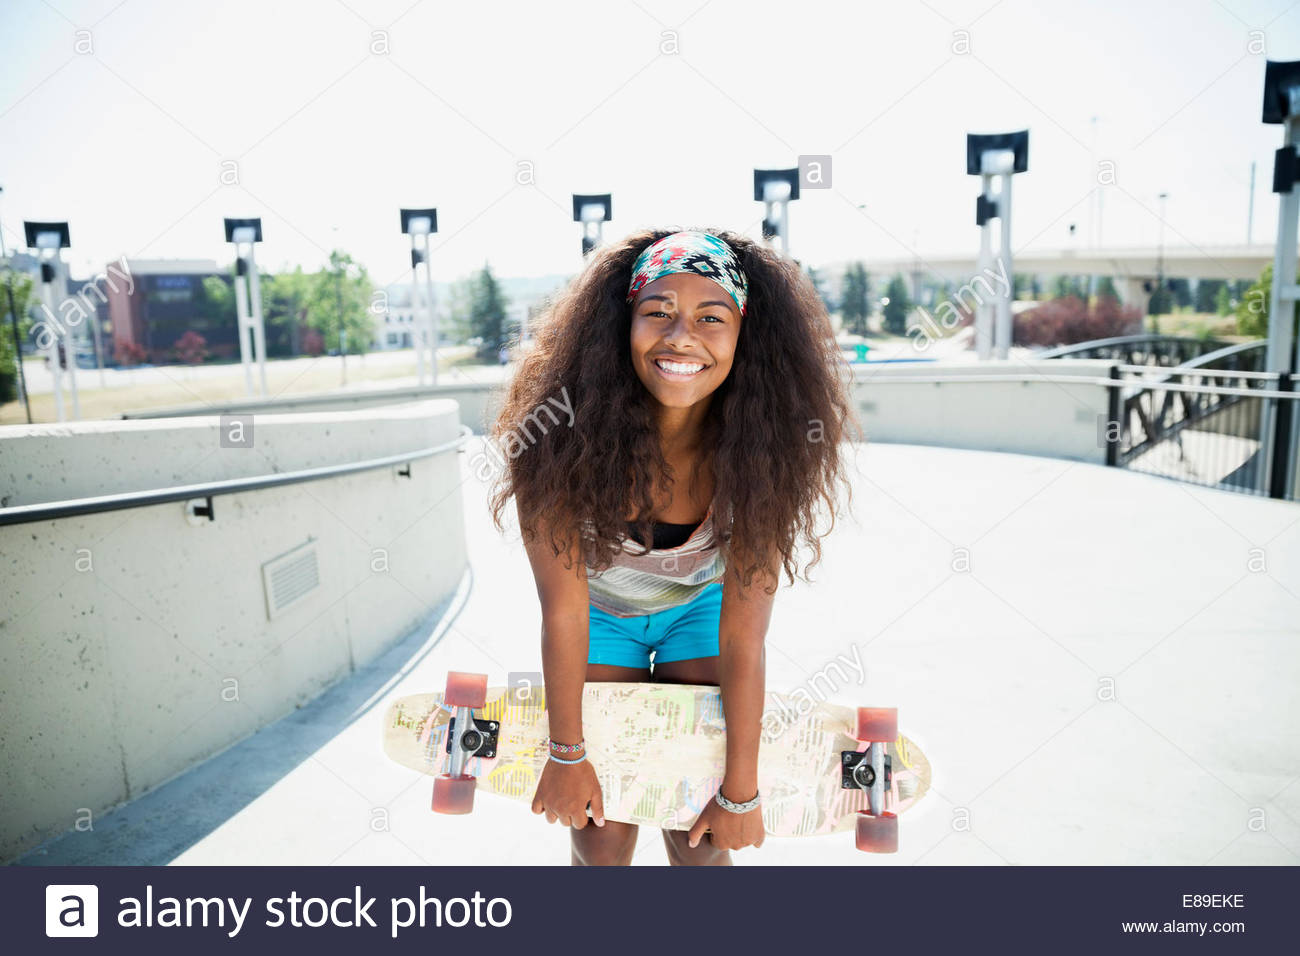 Portrait of teenage girl holding skateboard Banque D'Images